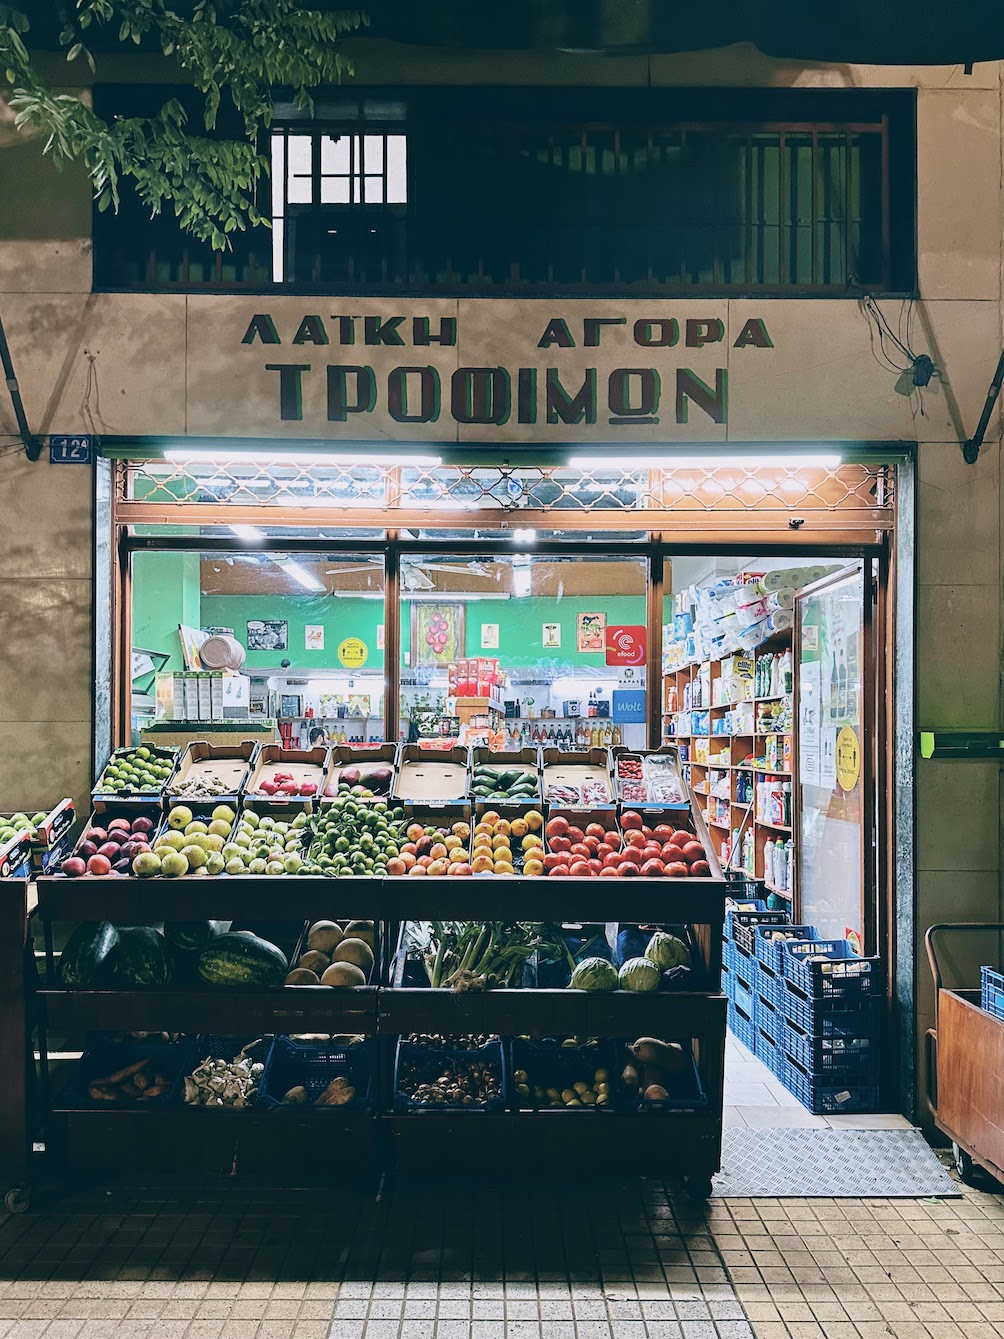 Travel Food People - Kypseli, Athens